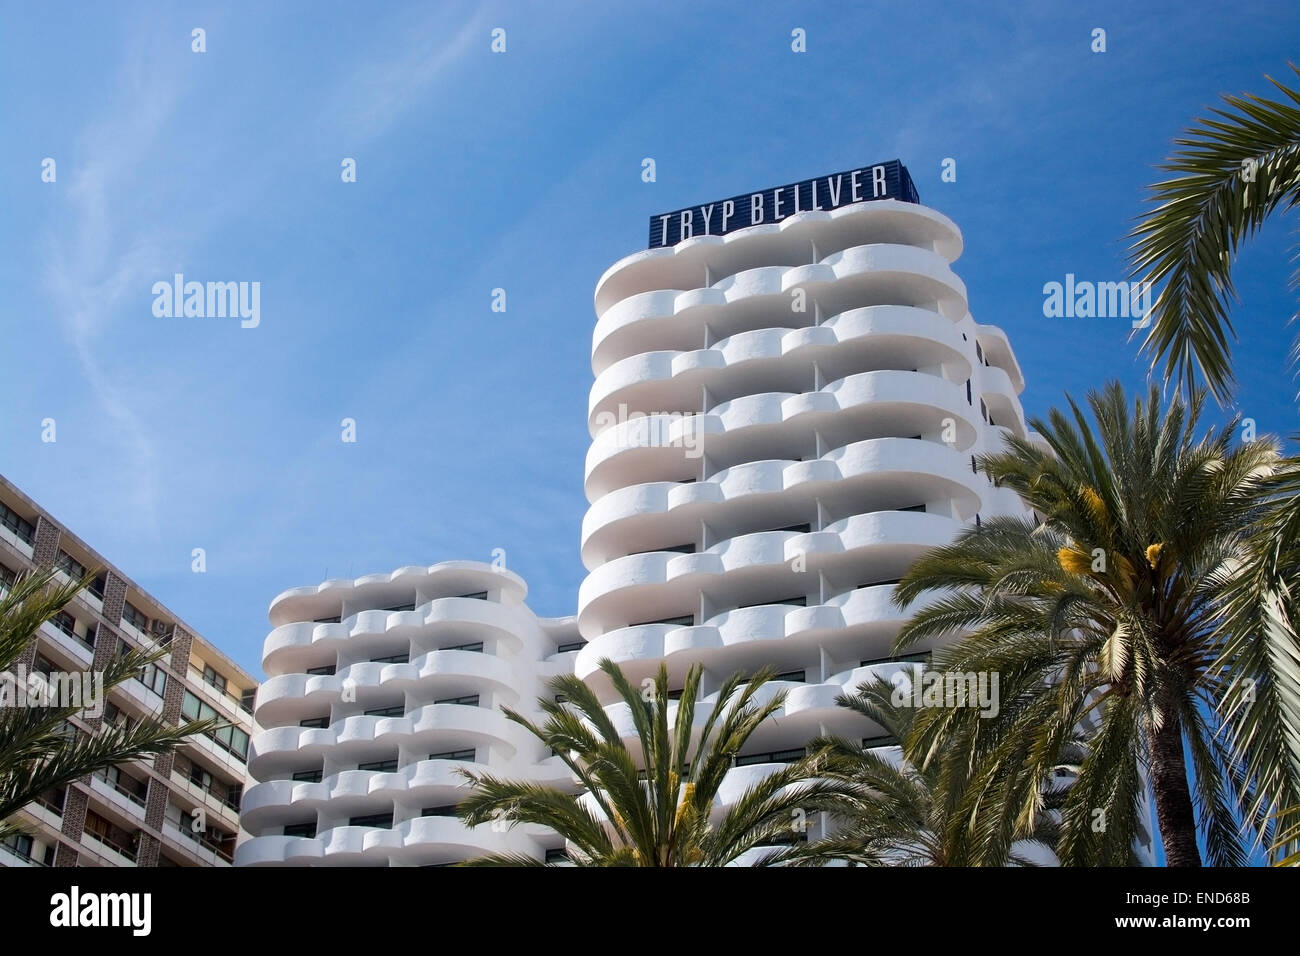 Hôtel Tryp Bellver sur le Paseo Maritimo le 19 avril 2015 à Palma de Majorque, Iles Baléares, Espagne. Banque D'Images